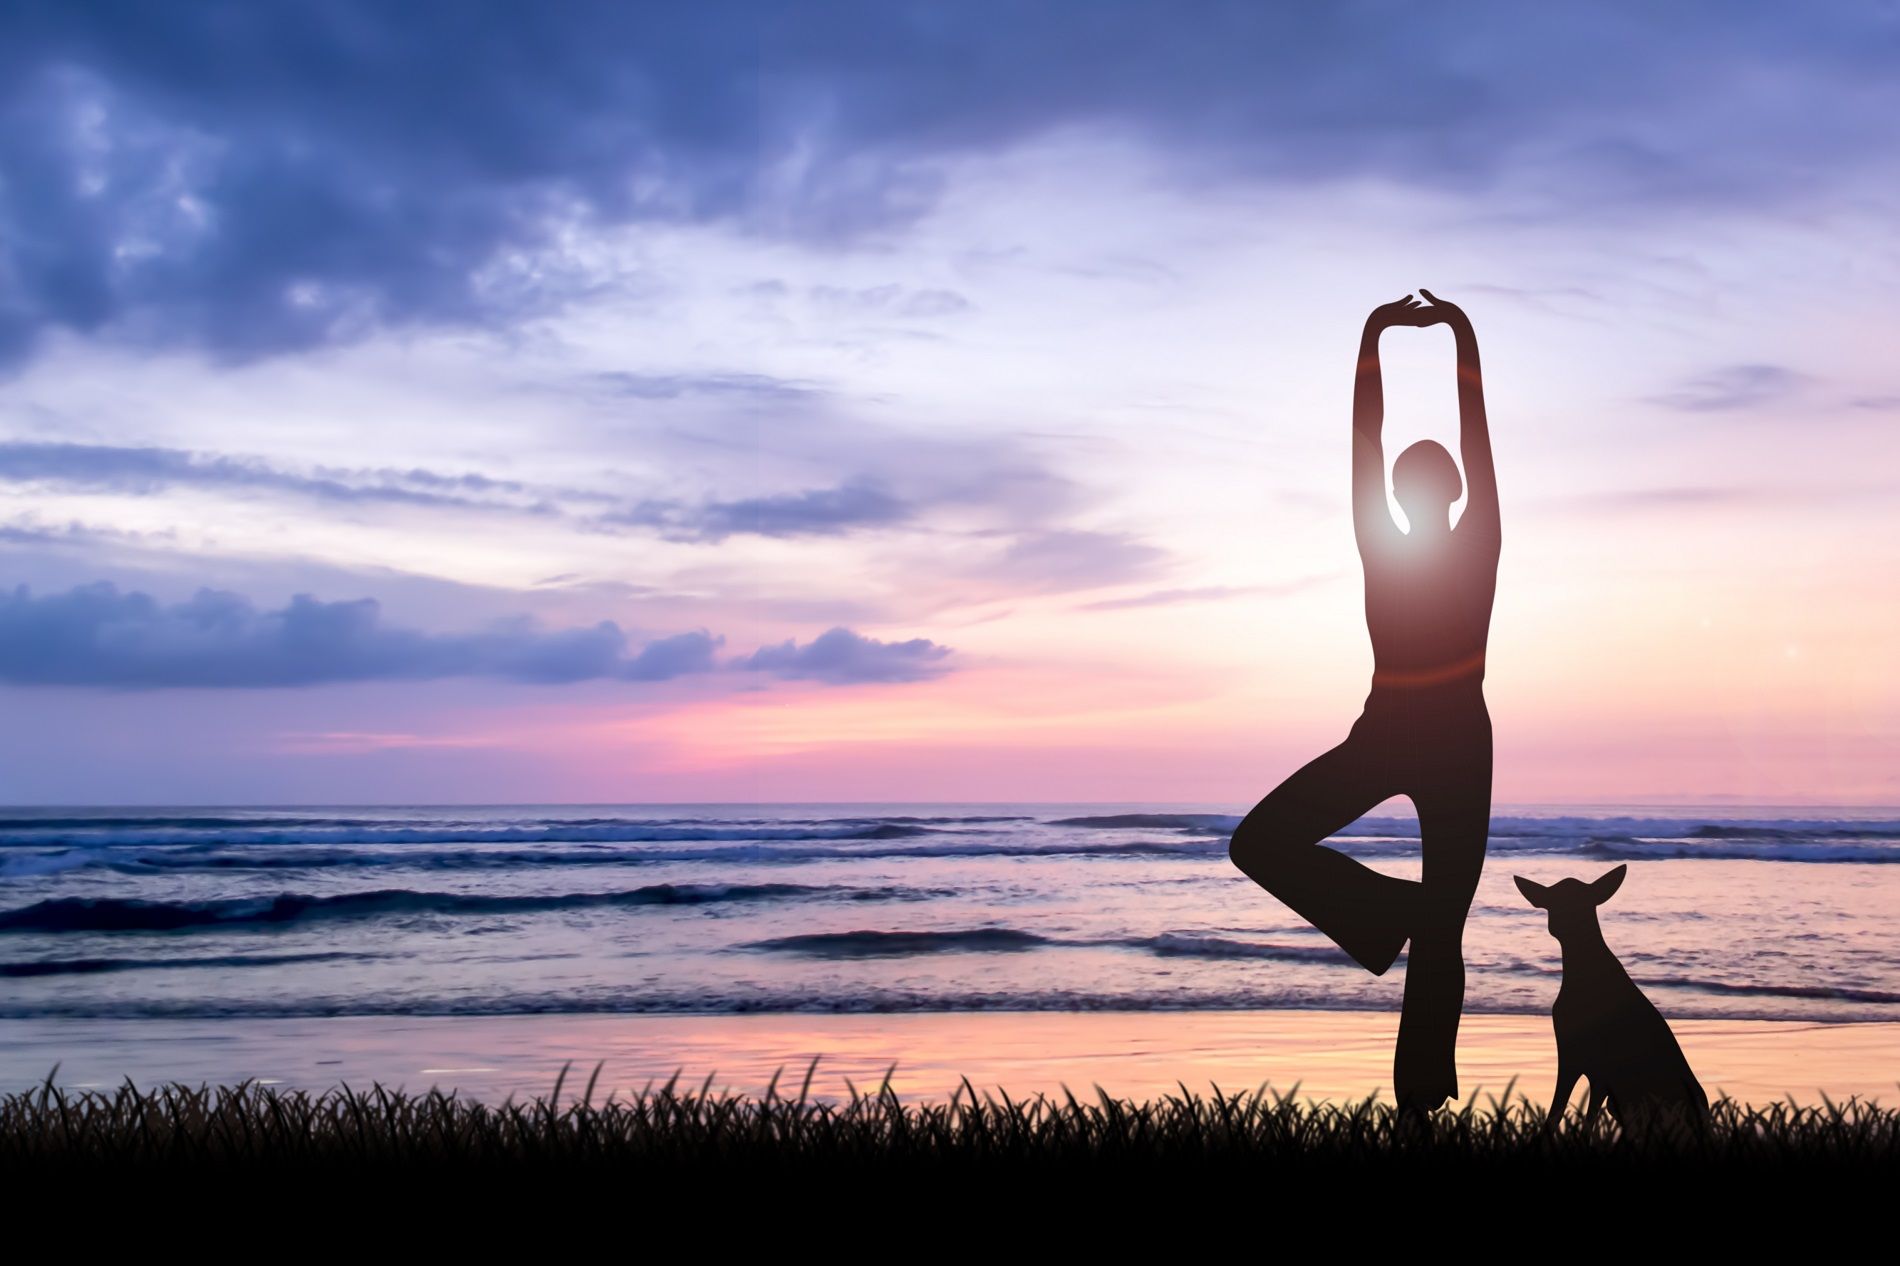 I migliori account Instagram dedicati allo yoga